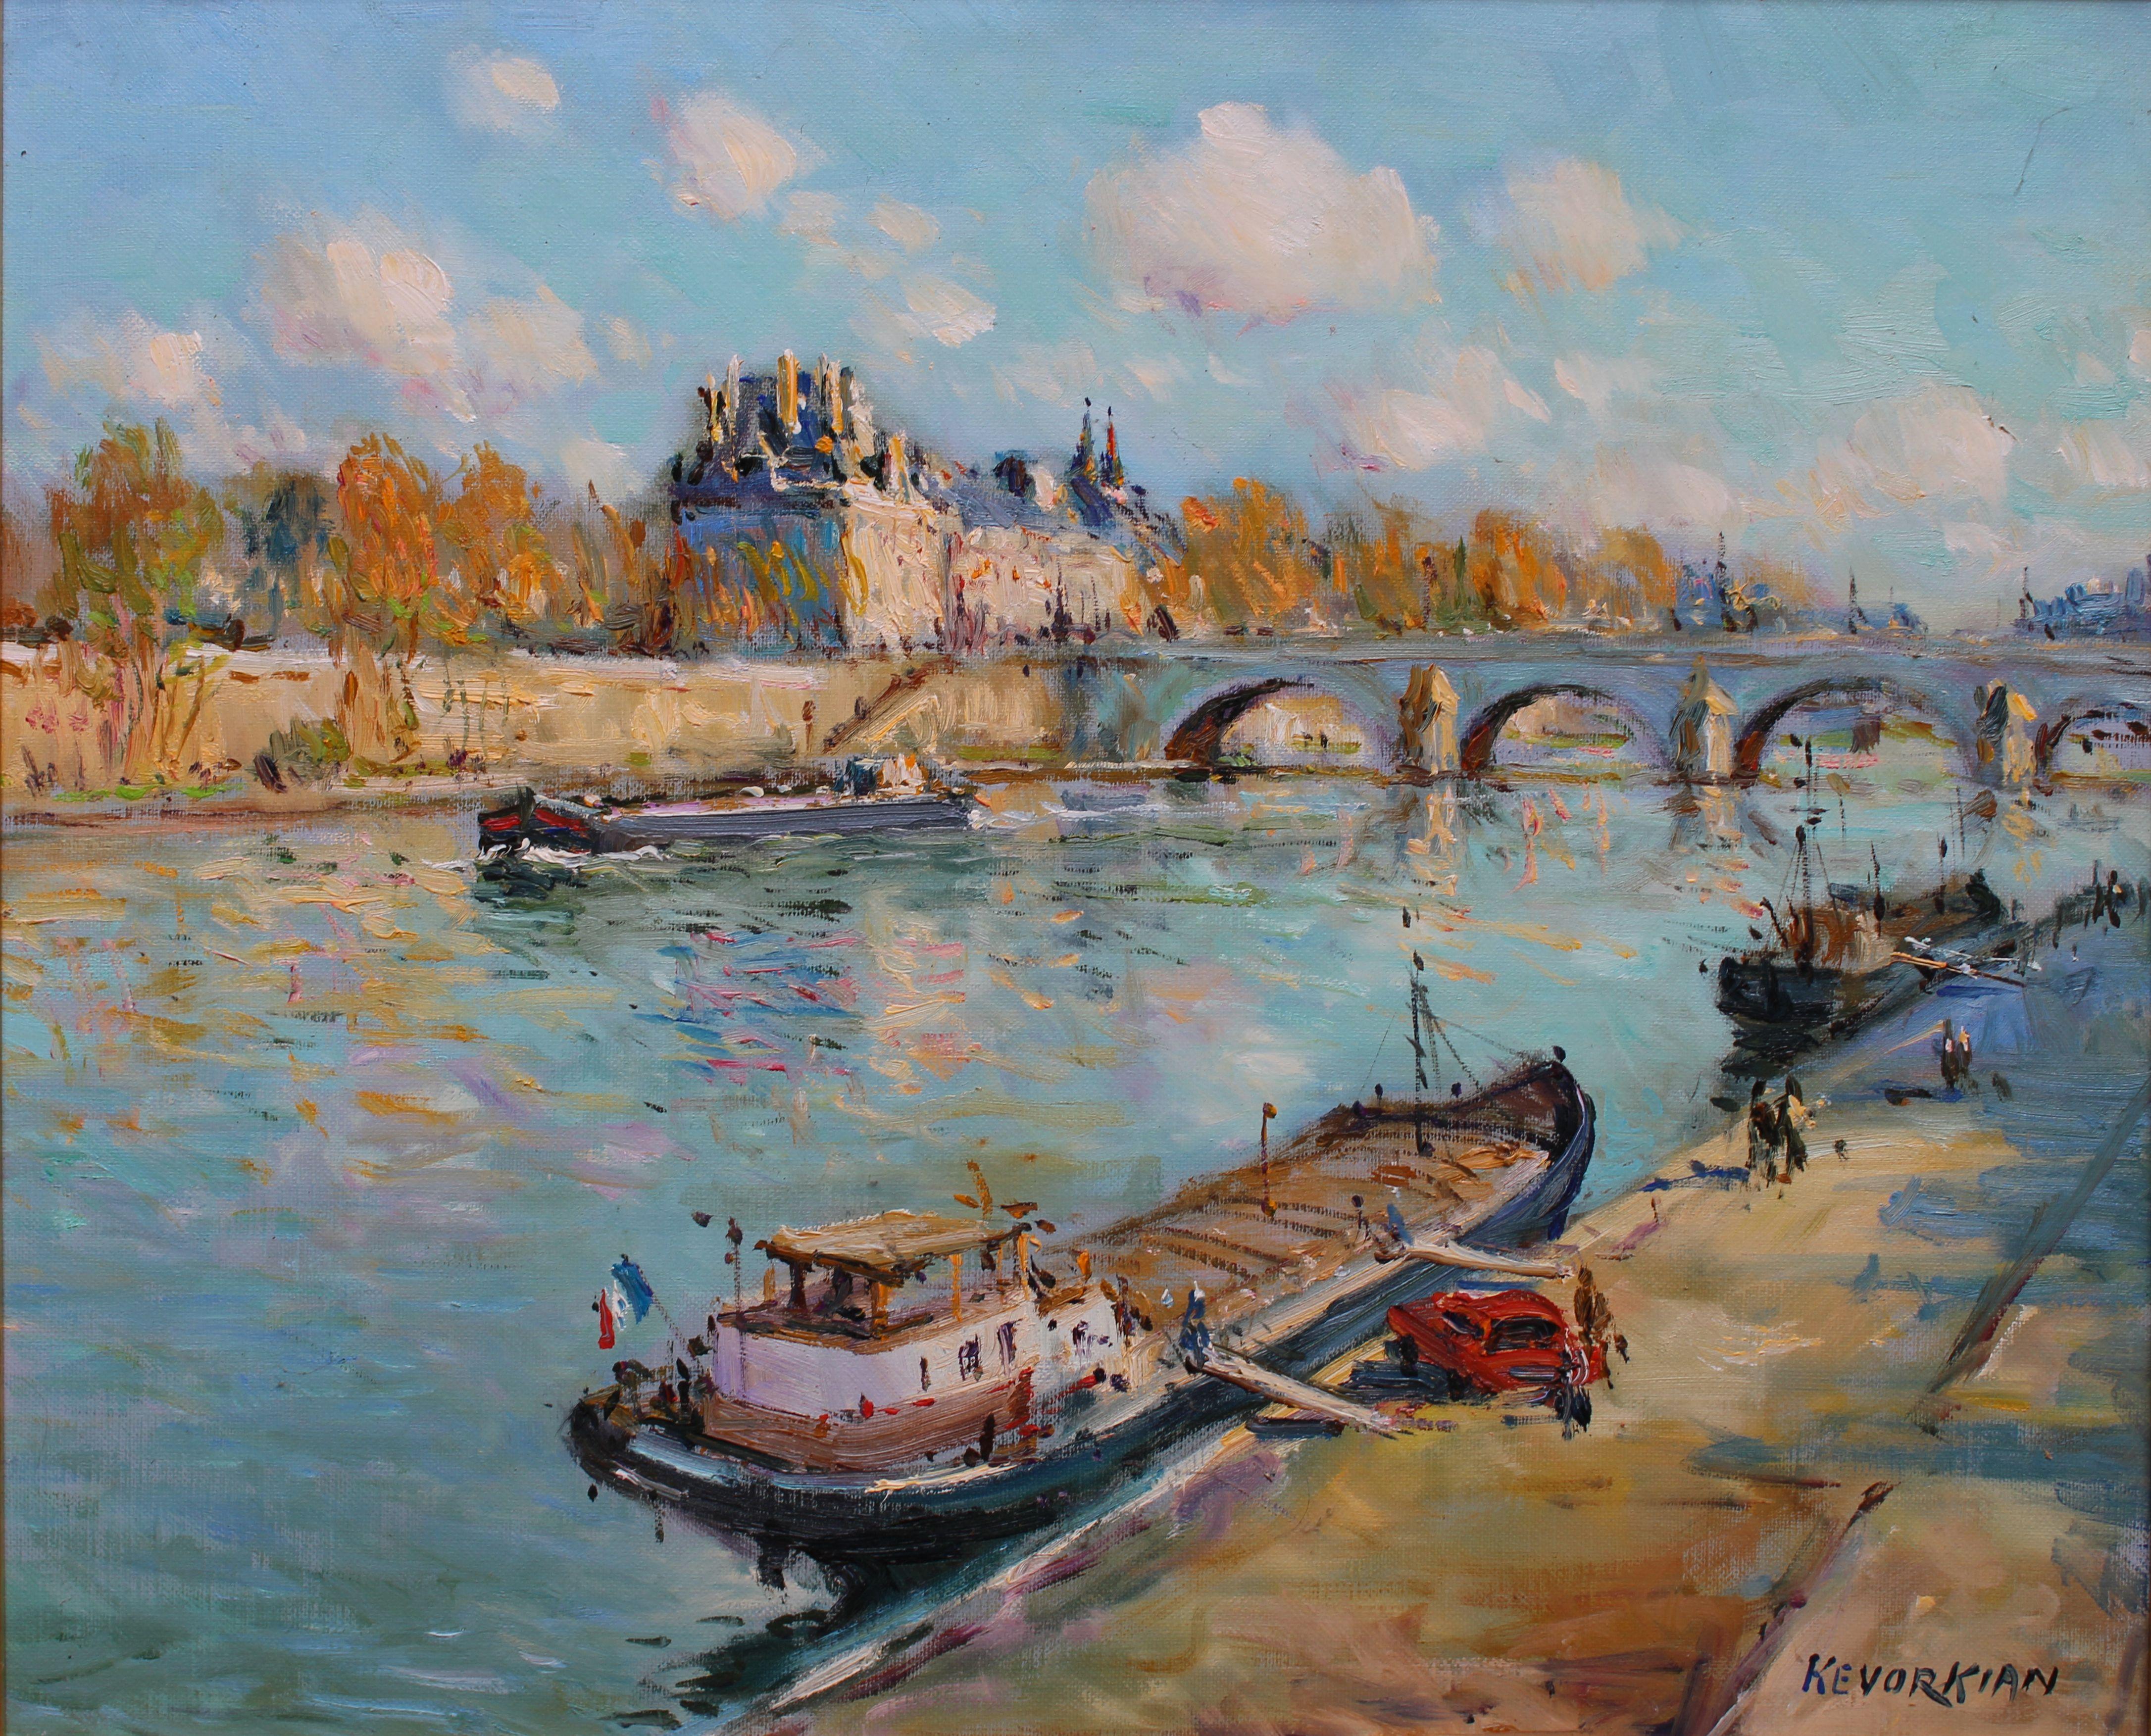 JEAN KEVORKIAN Landscape Painting - La seine à Paris. Oil on canvas, 38x46.5 cm